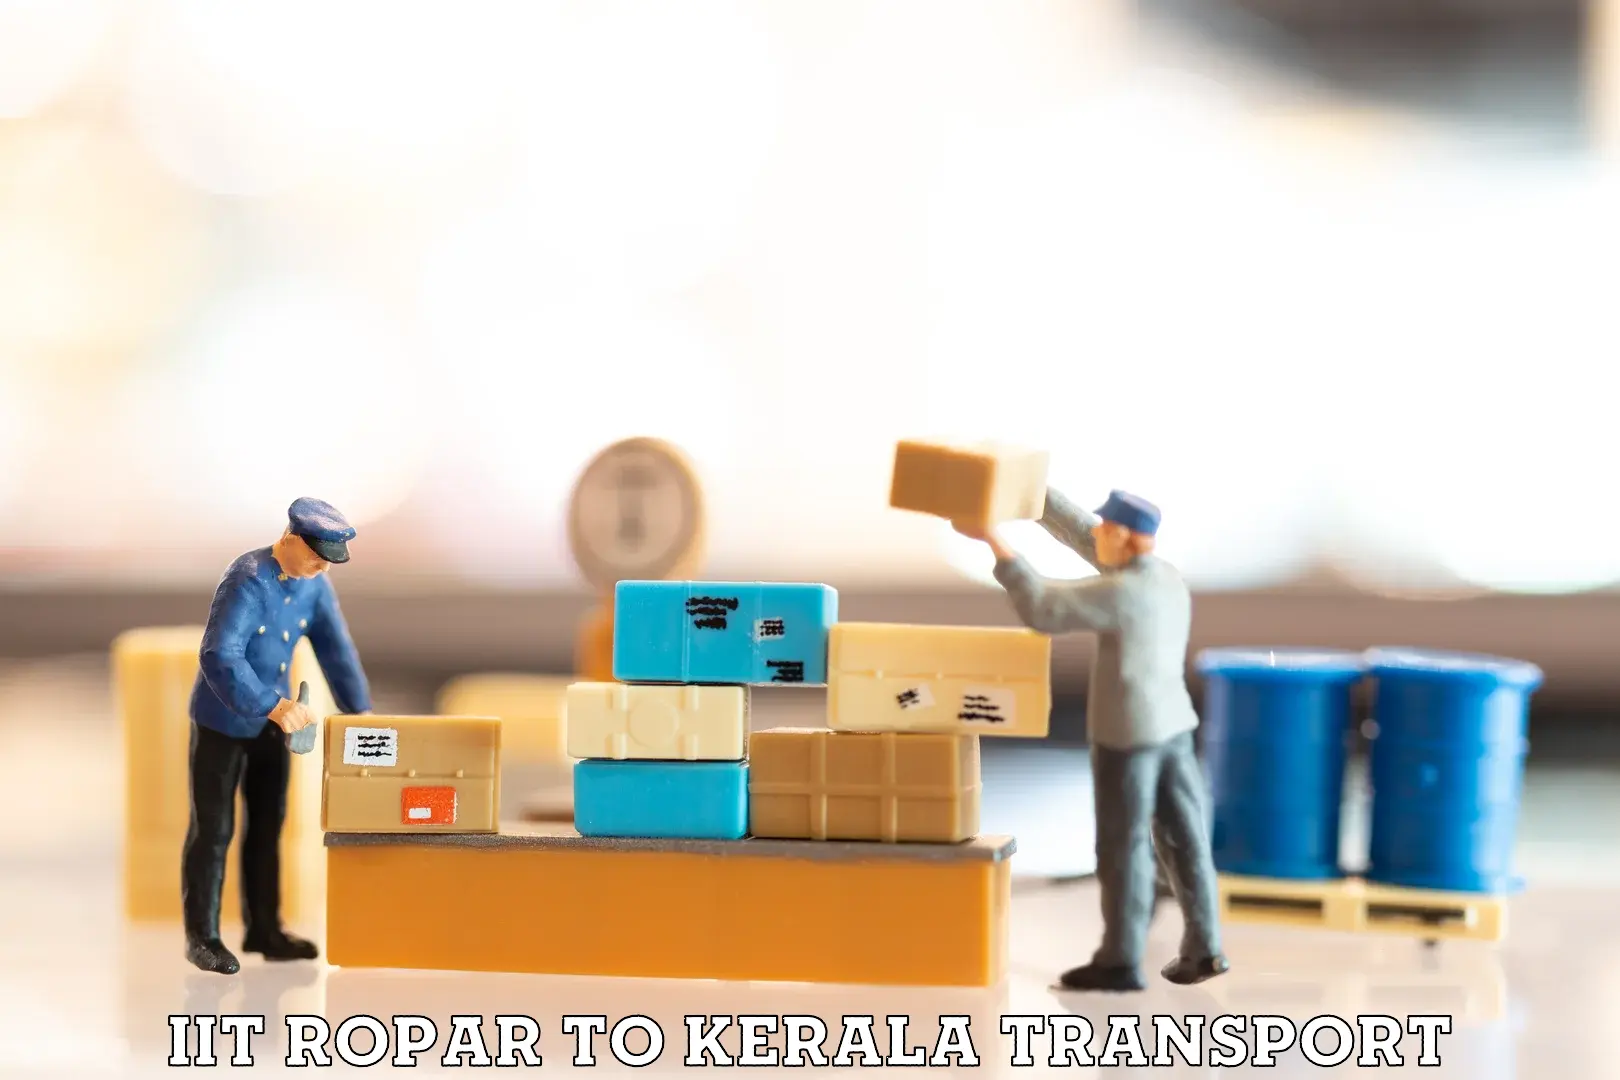 Commercial transport service IIT Ropar to Neyyattinkara